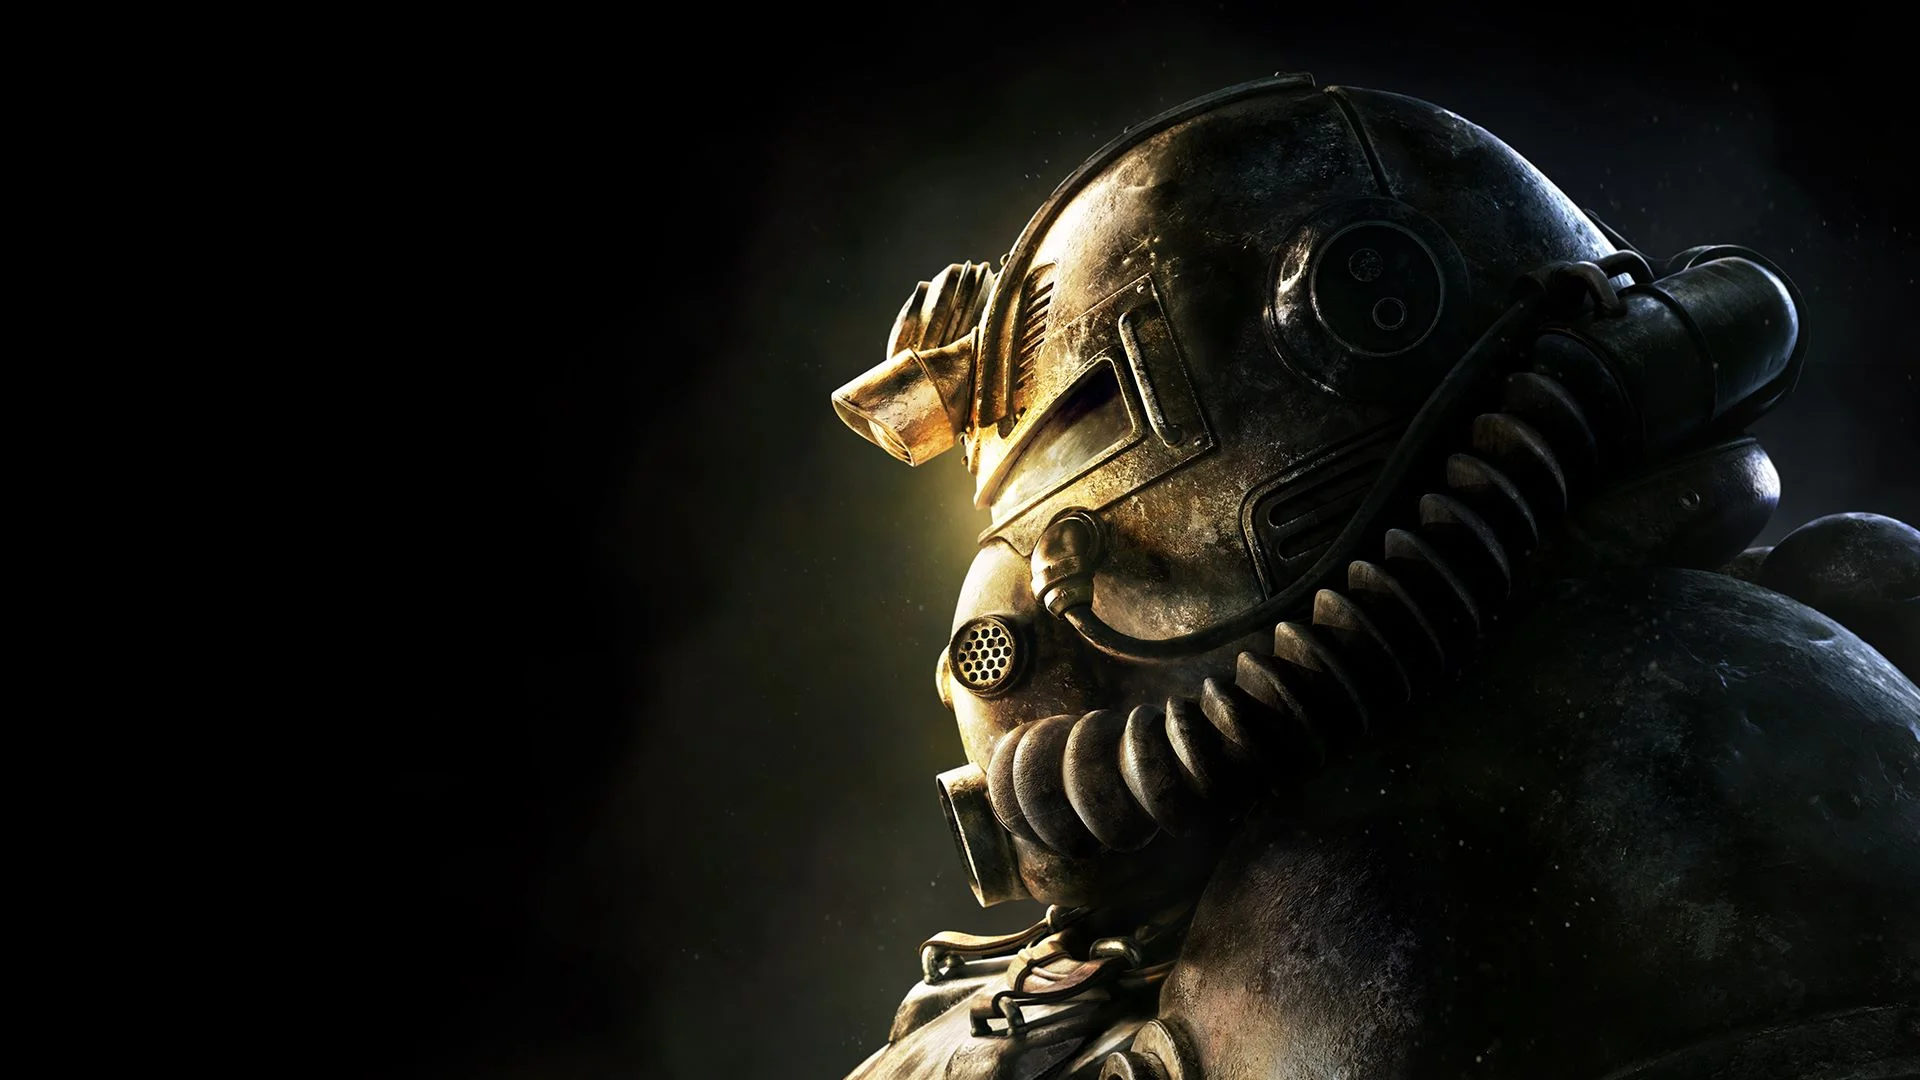 Патч первого дня для Fallout 76 весит больше самой игры - фото 1